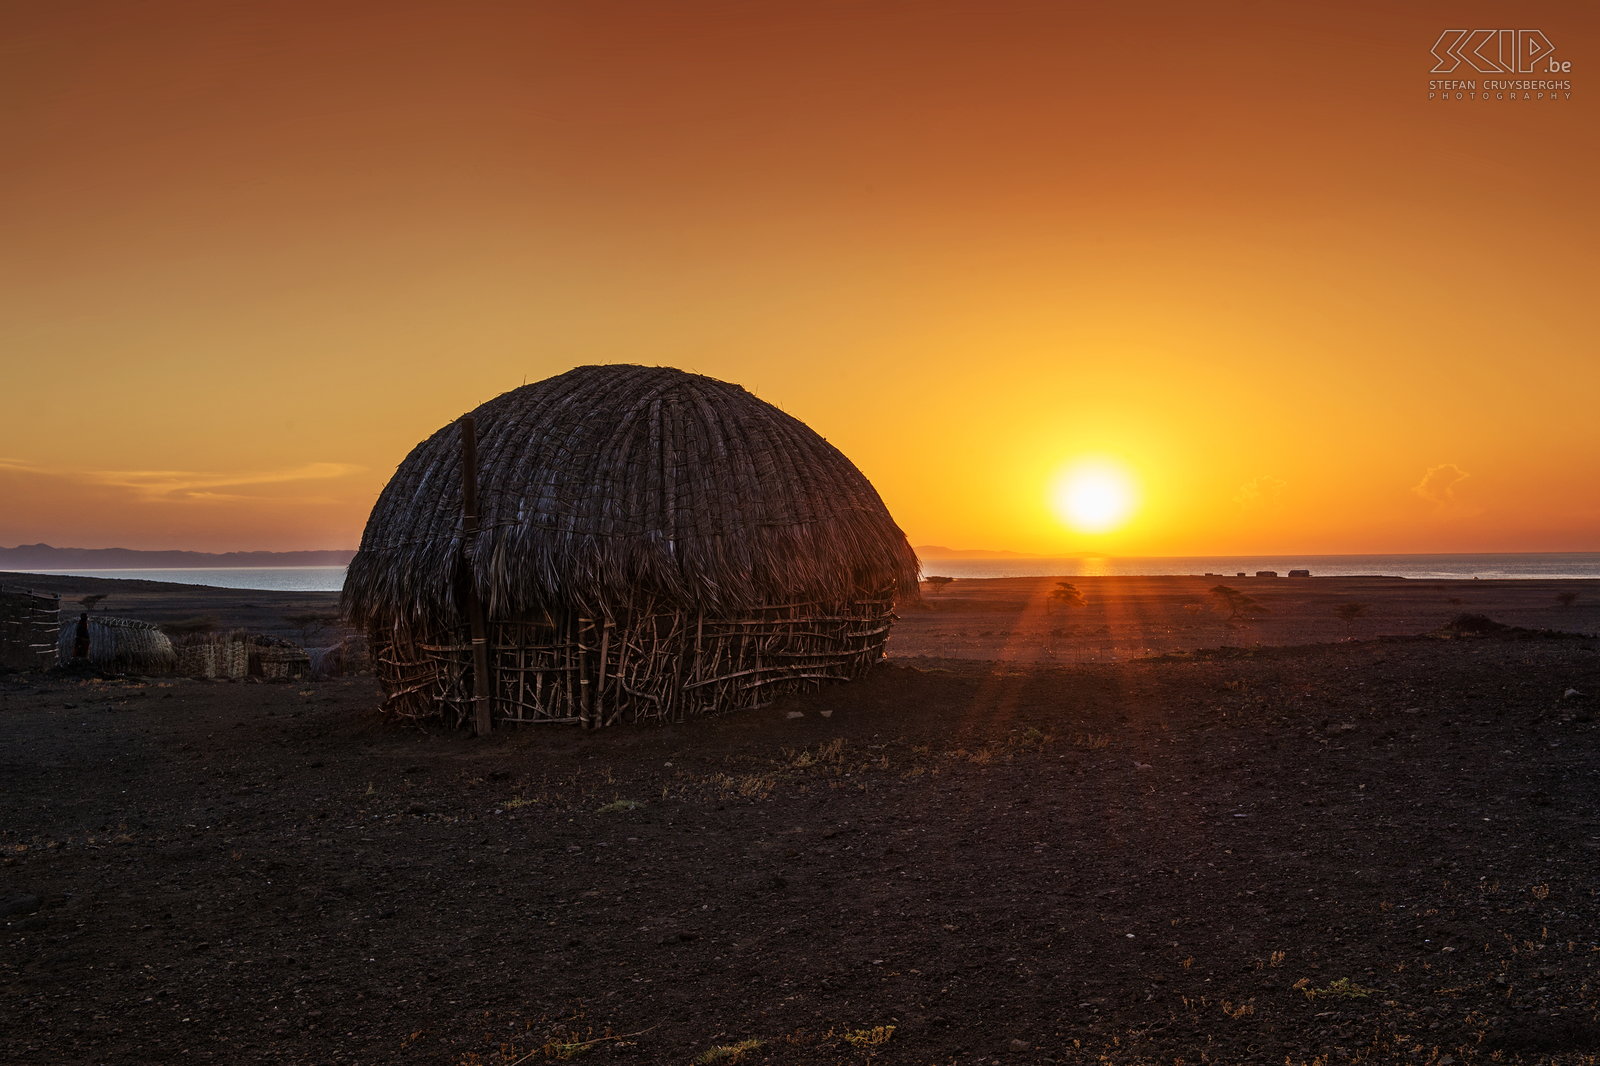 Lake Turkana - Zonsondergang Prachtige zonsondergang aan het Turkanameer met een traditionele hut van de Turkana mensen. Stefan Cruysberghs